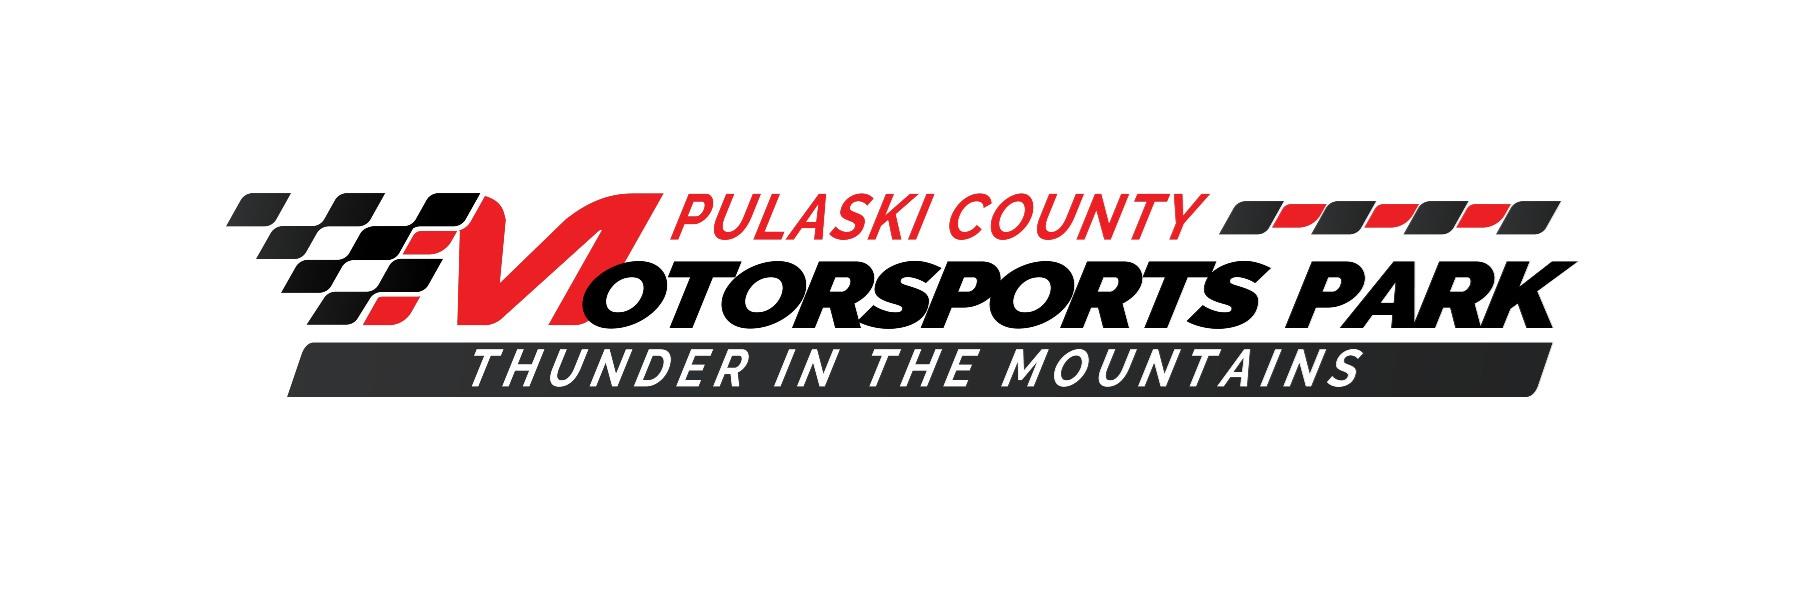 Pulaski County Motorsports Park